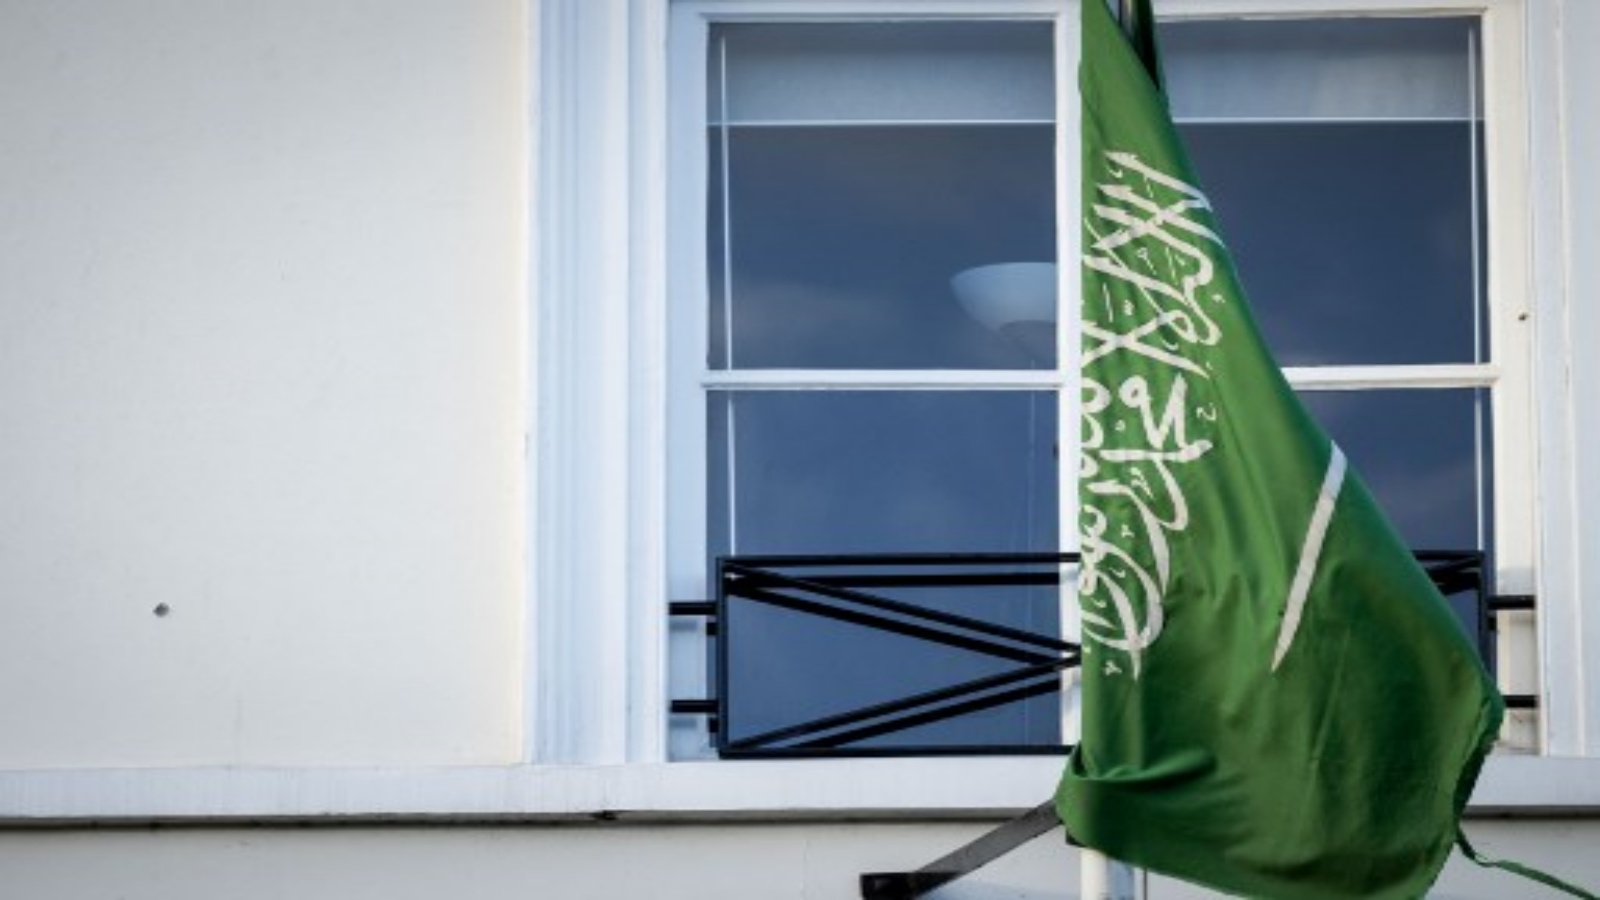 سفارة المملكة العربية السعودية في لاهاي في 12 نوفمبر 2020 بعد إطلاق النار عليها